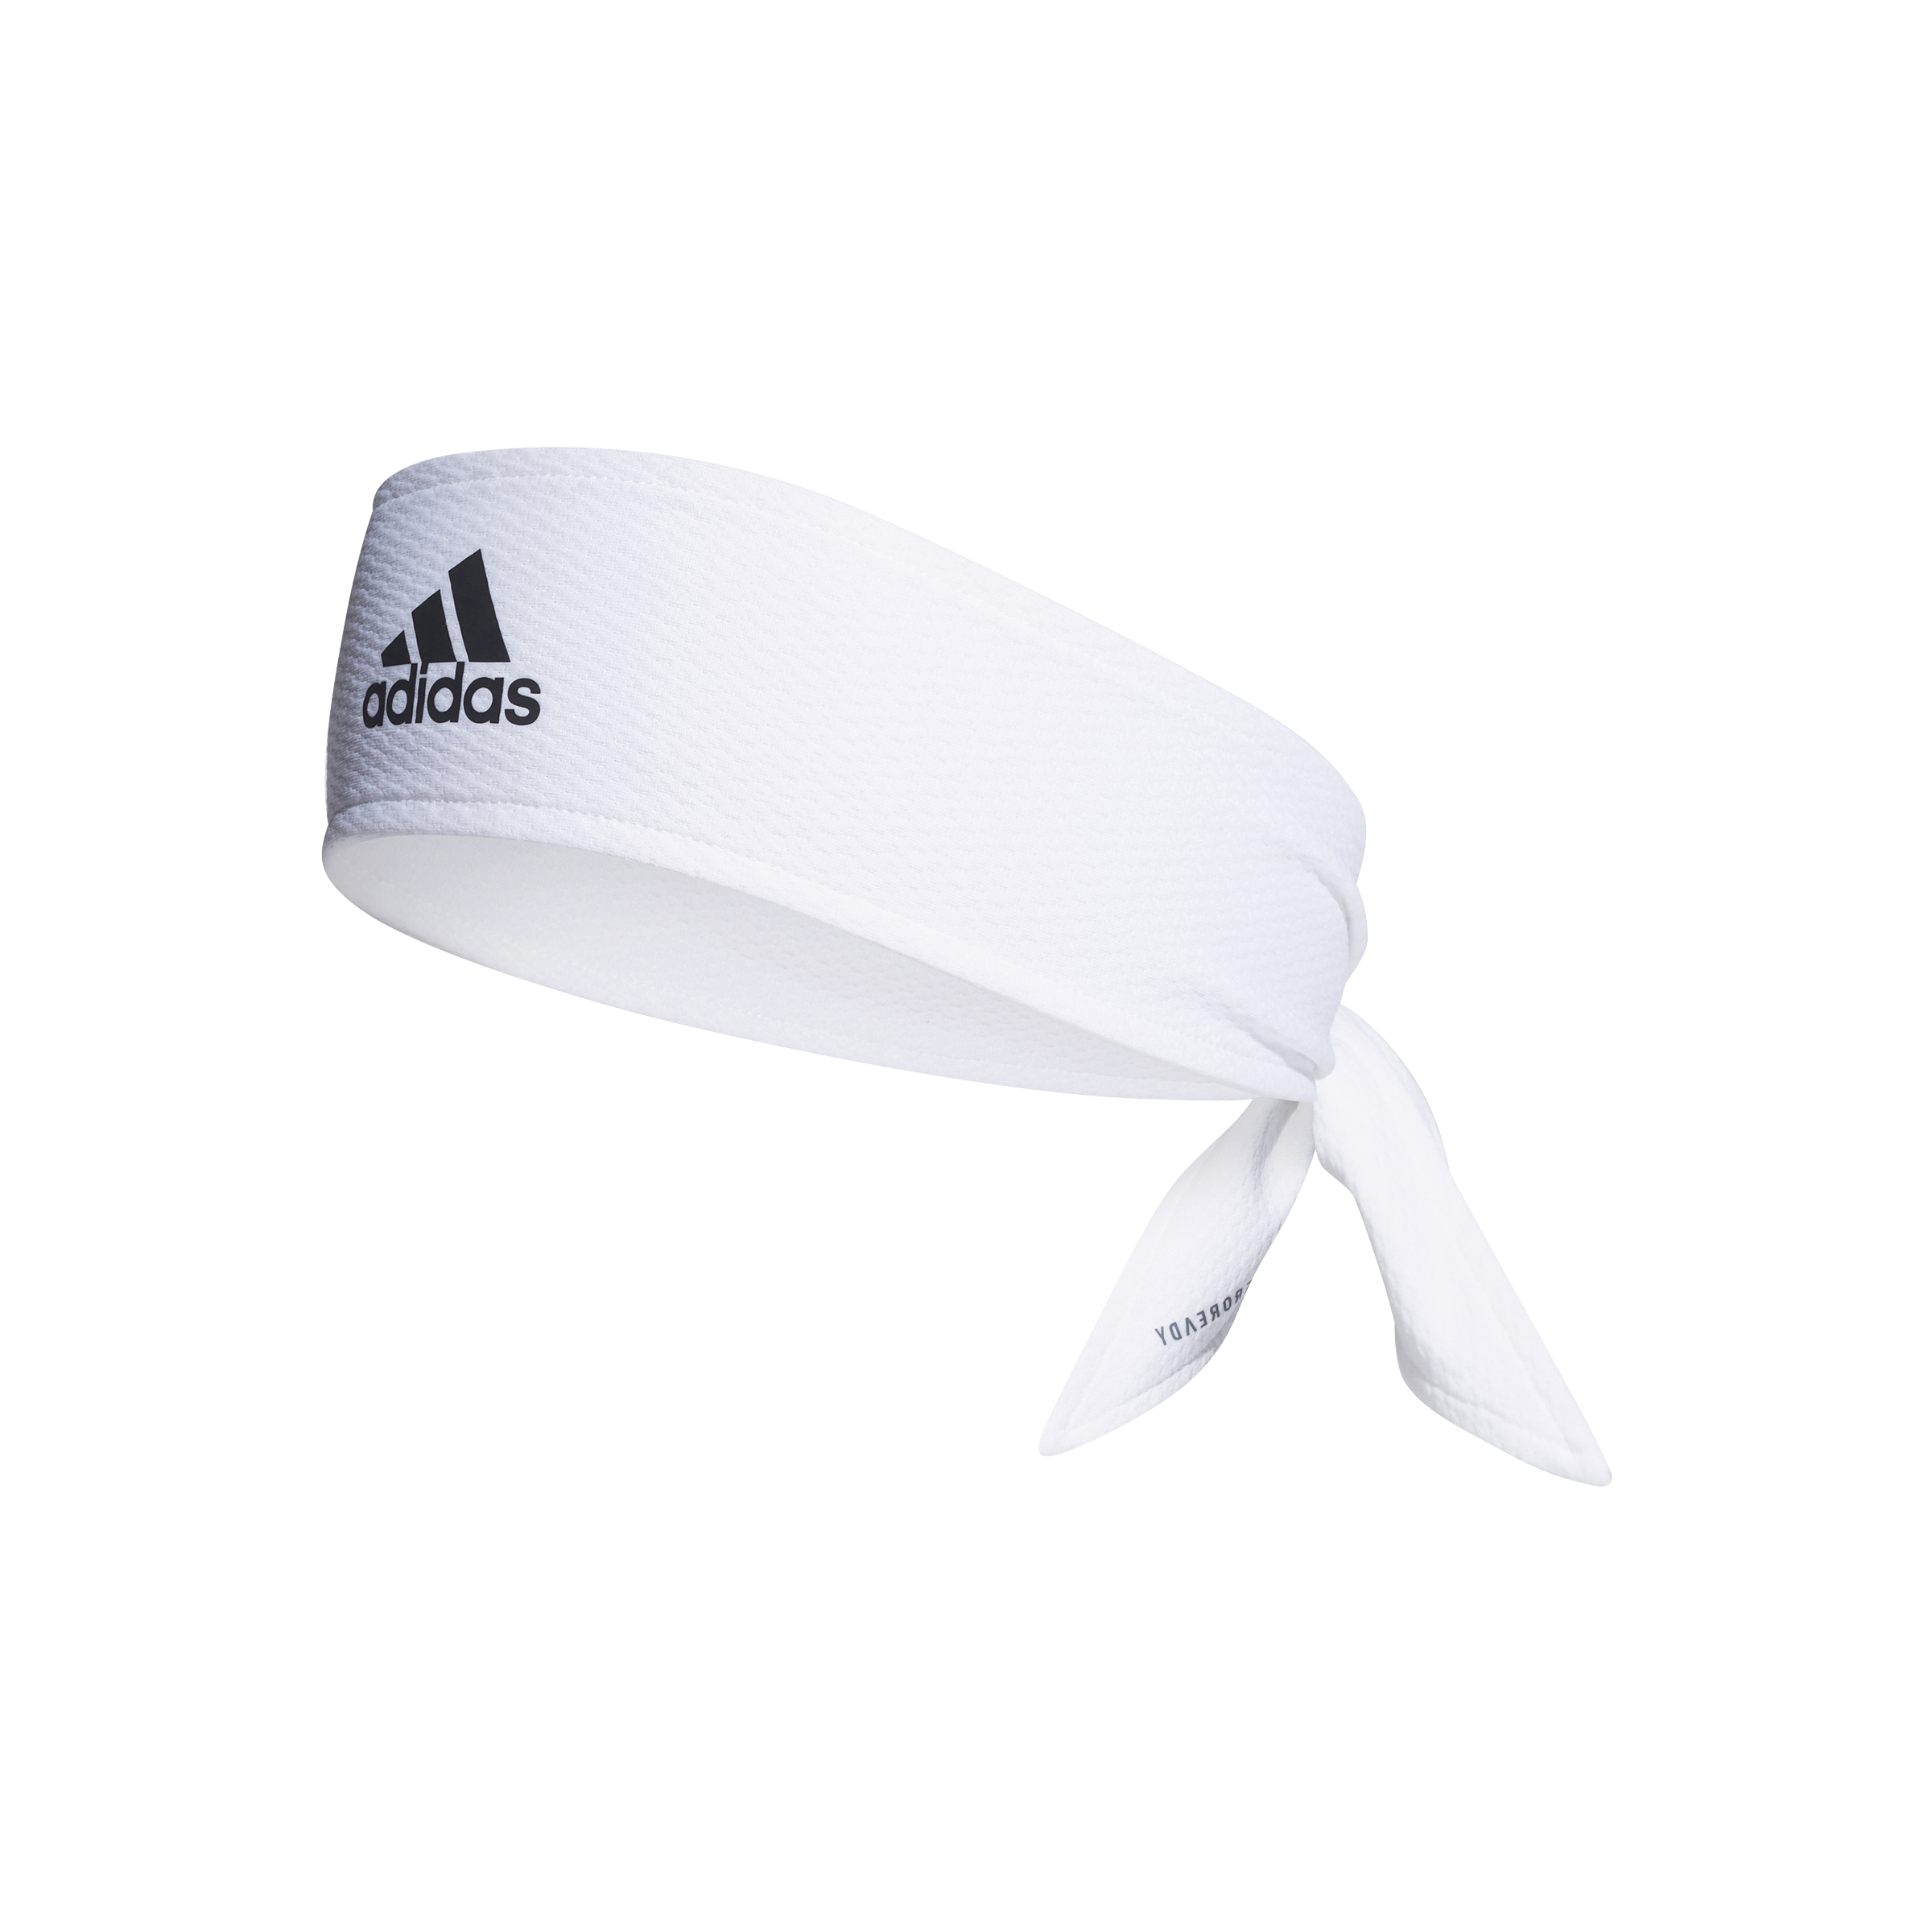 Adidas Aeroready Bindeband (Weiß)